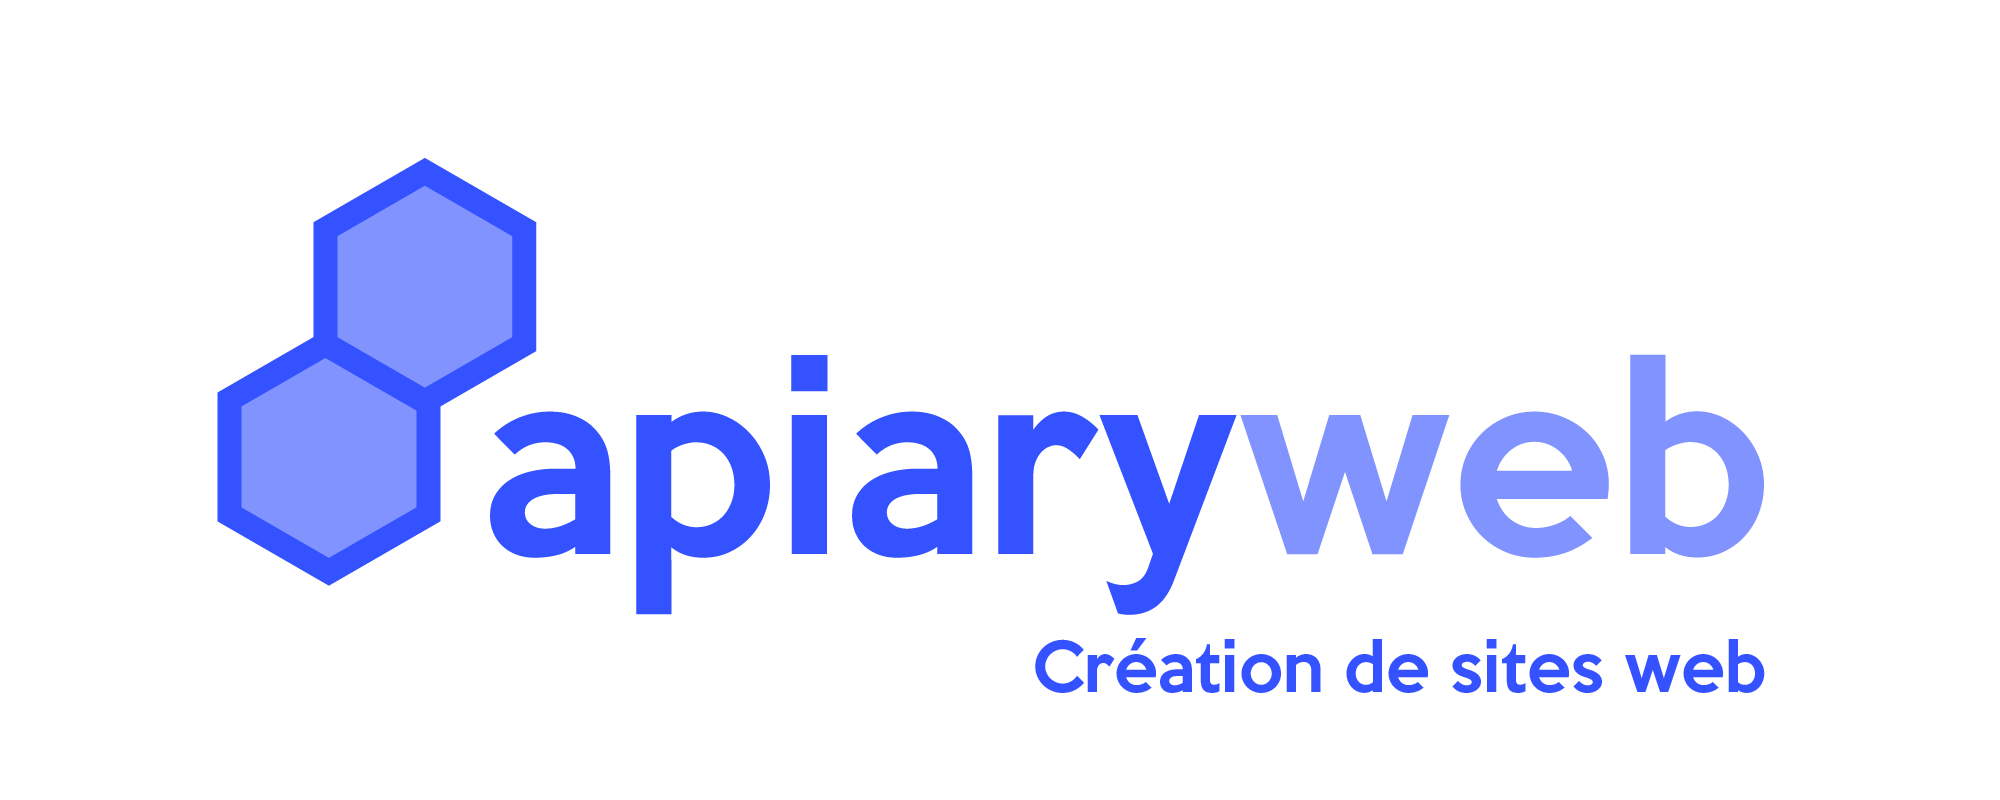 Apiaryeb - Création de sites web